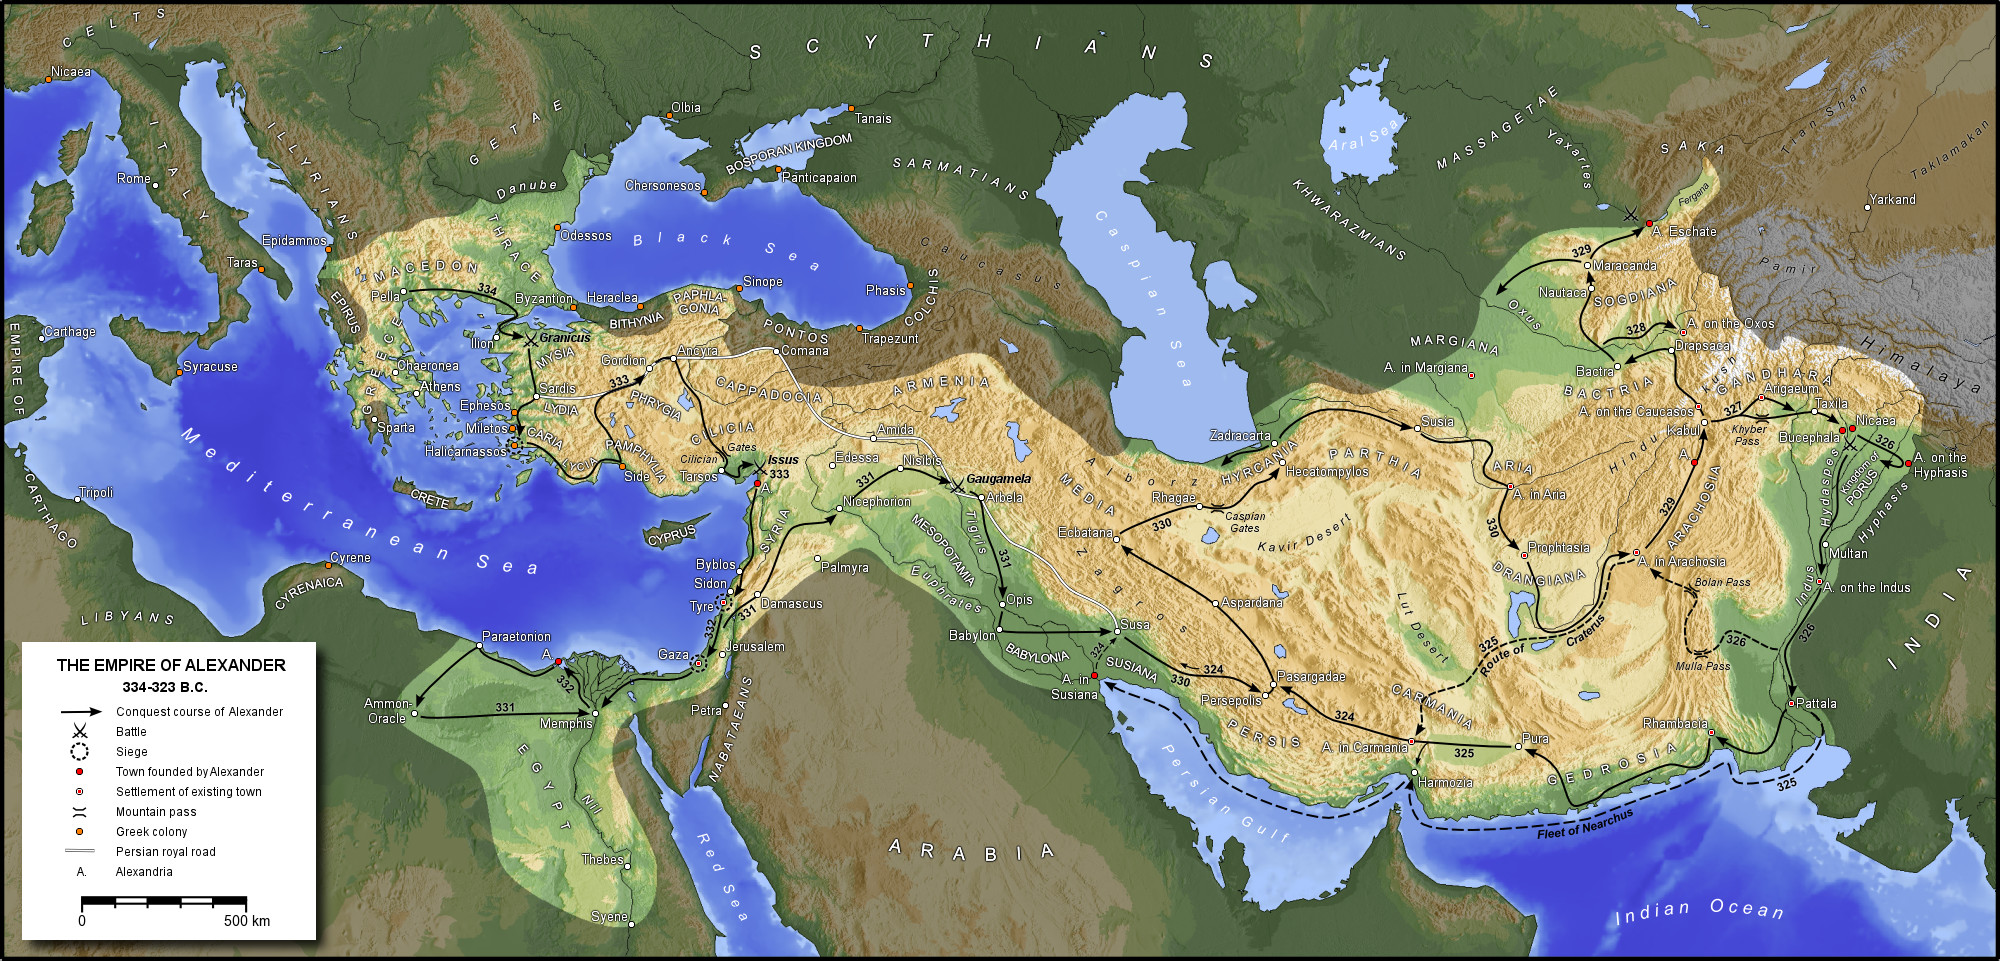 El Imperio Macedonio de Alejandro Magno 323 aC